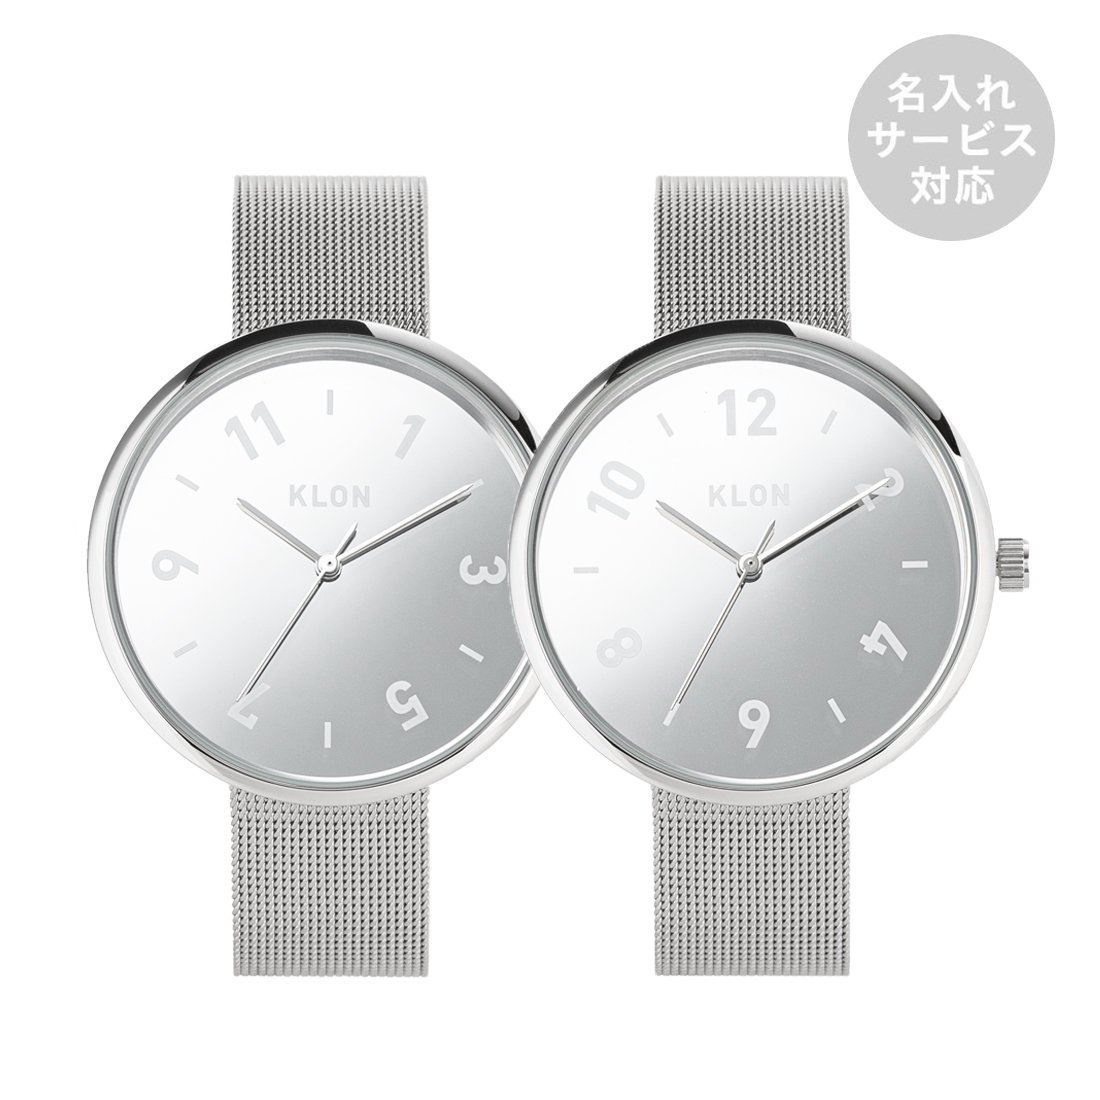 【名入れ対応】KLON PASS TIME DARING -mirror .ver- 38mm カジュアル 腕時計